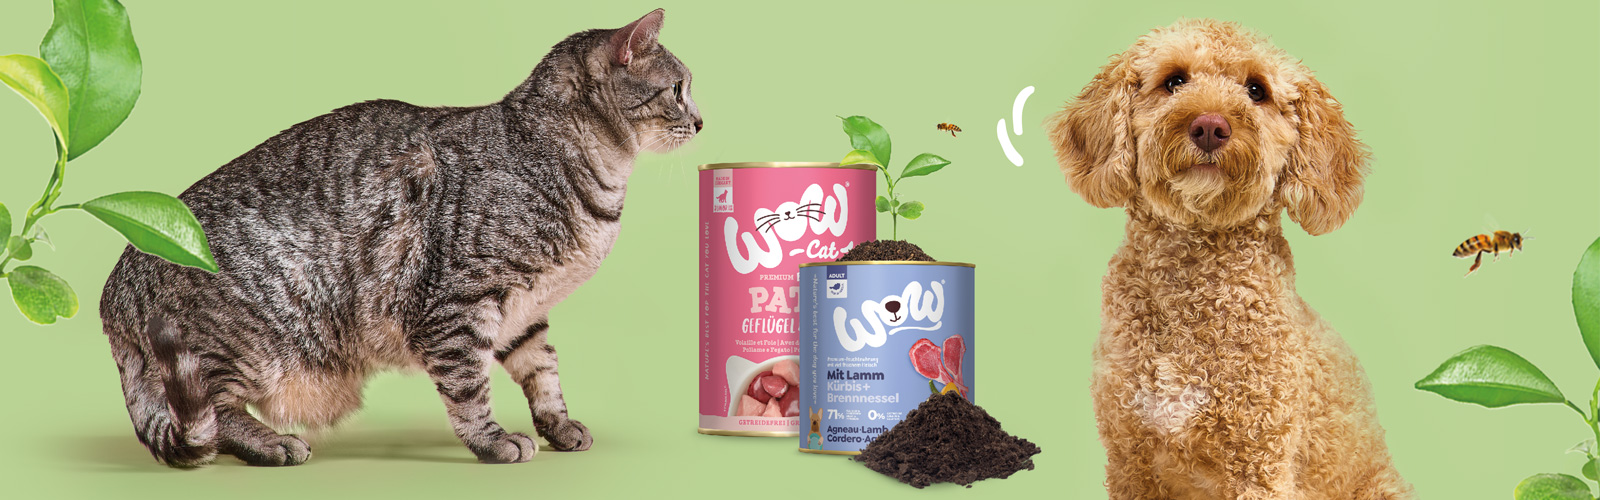 Un chat et un chien se trouvent dans l'image et avec eux deux boîtes de conserve dont l'une donne naissance à une plante verte.